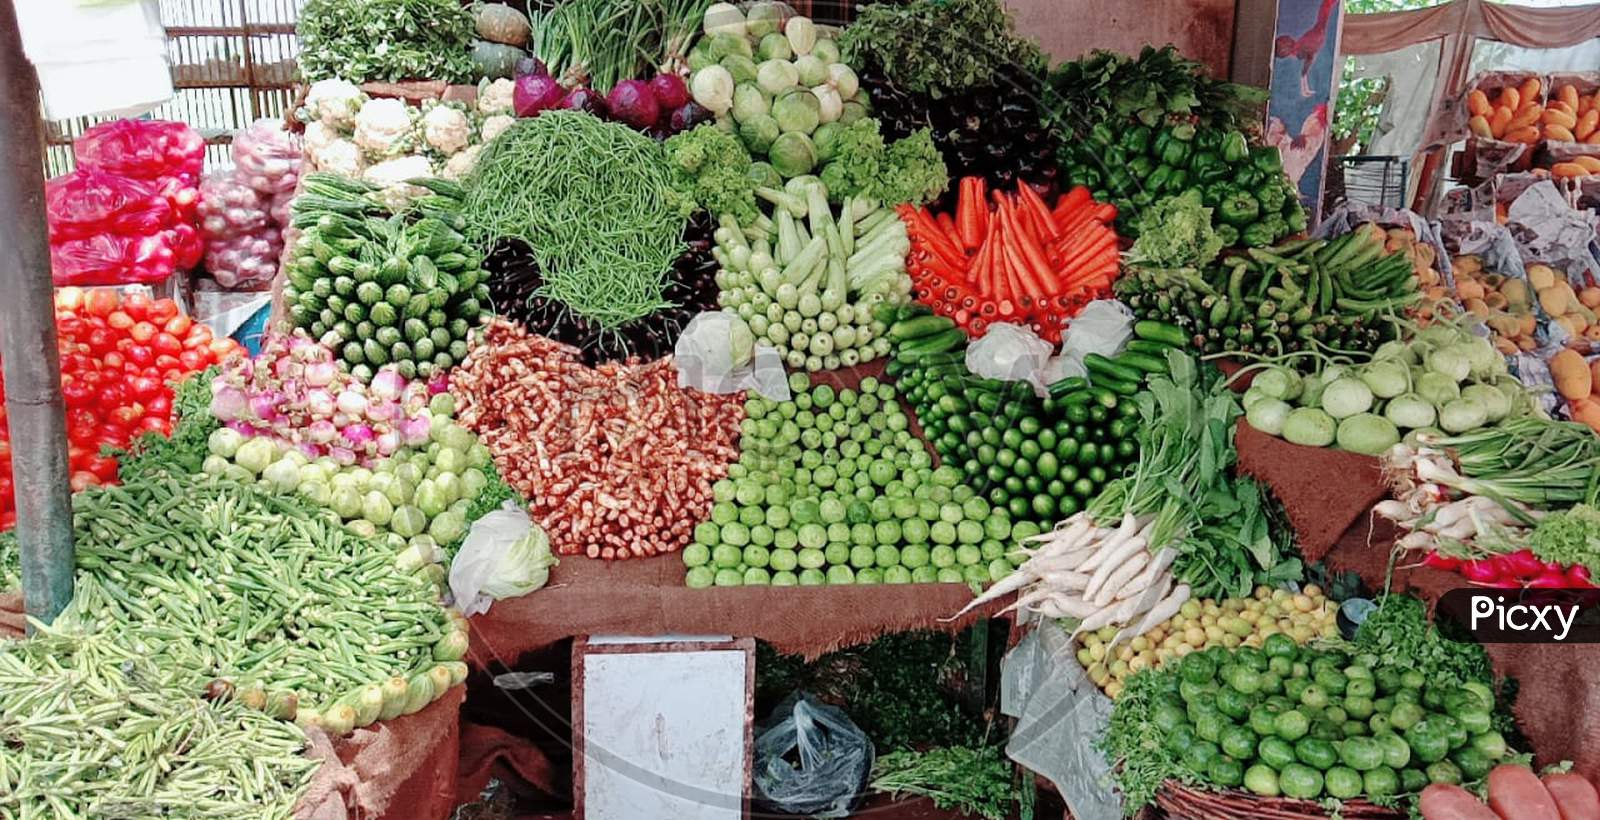 Display of vegetables